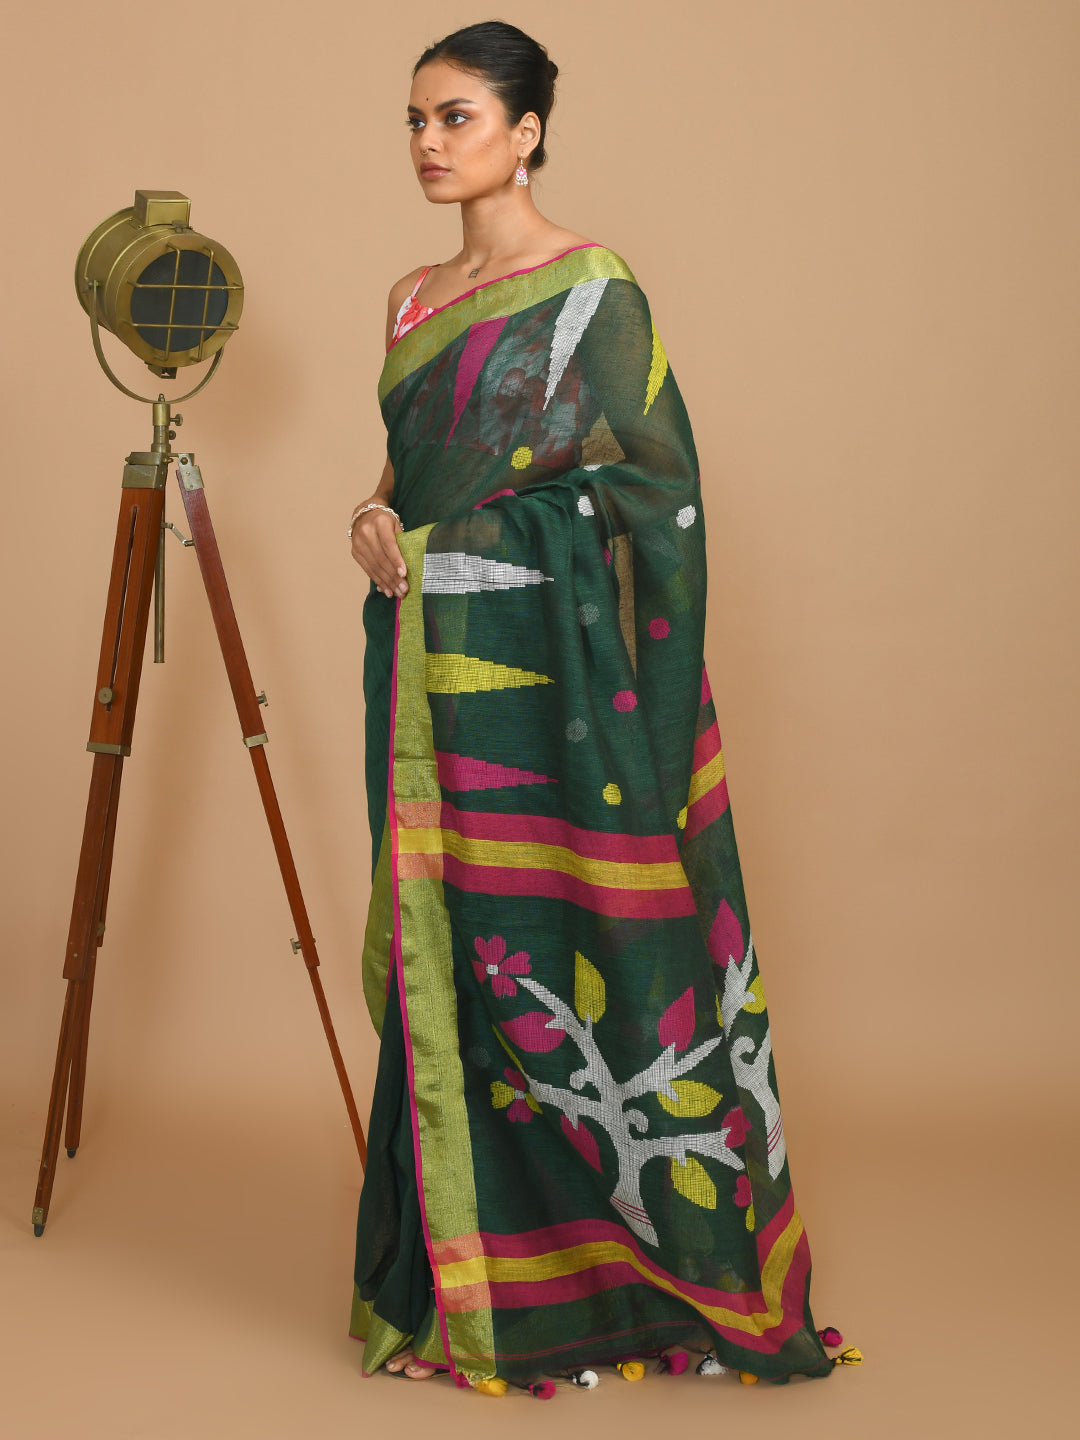 Jamdani Green Woven Design Daily Wear